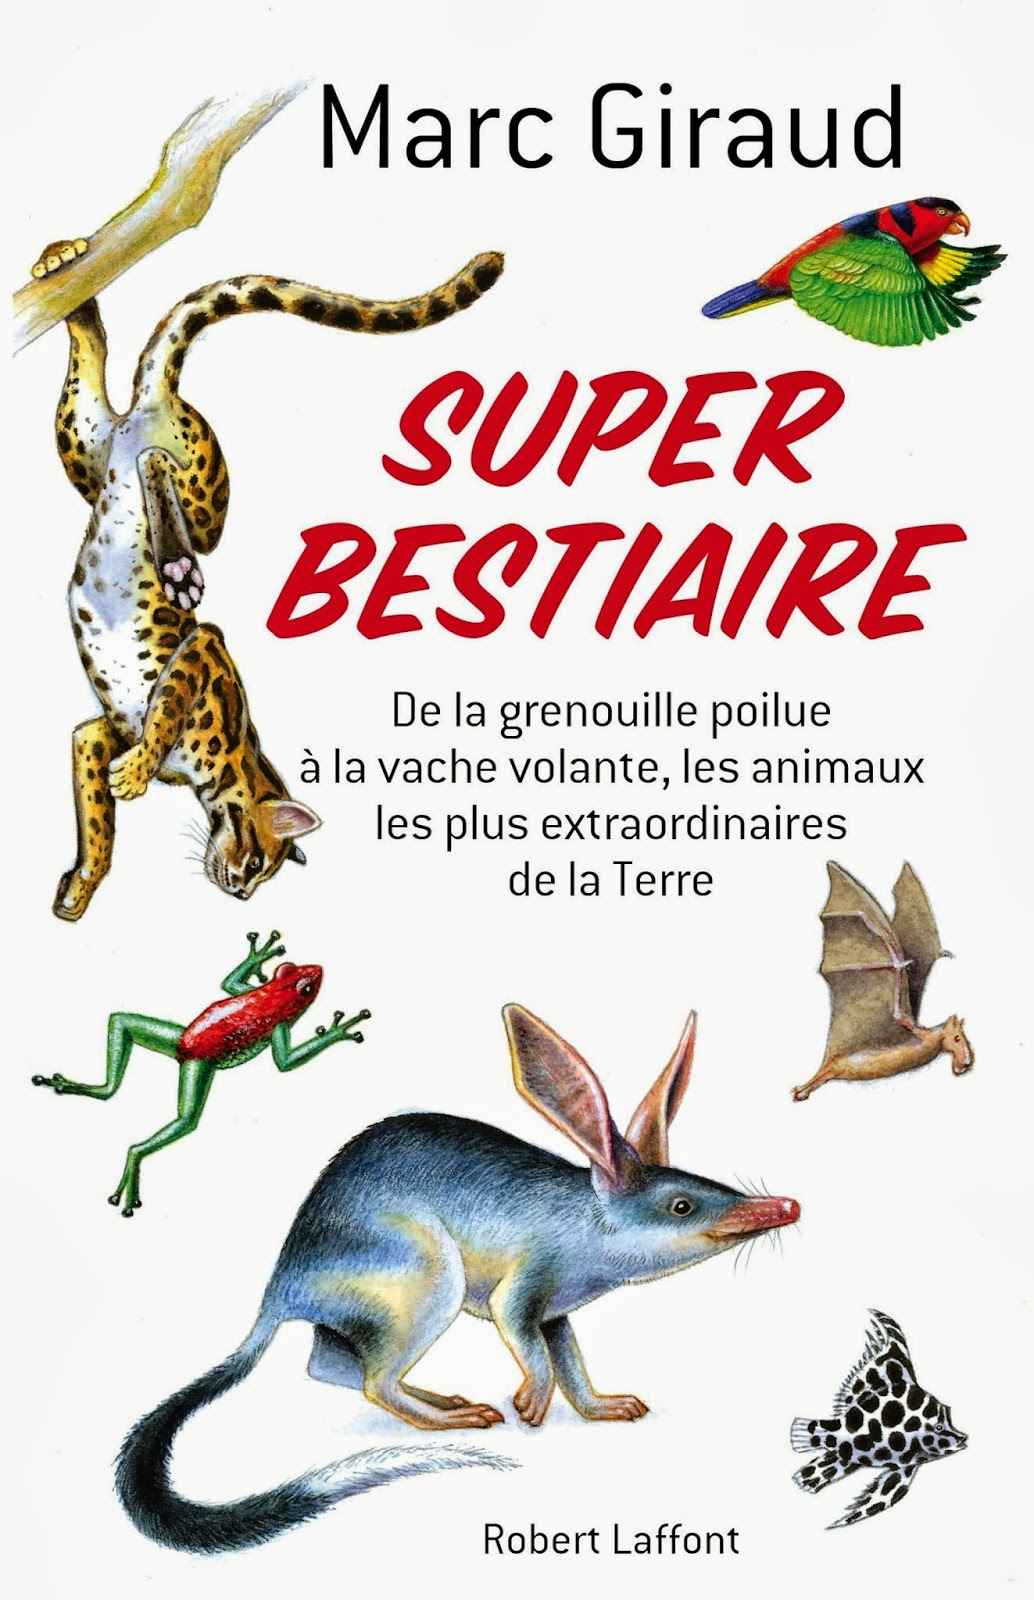 Super bestiaire, de Marc Giraud